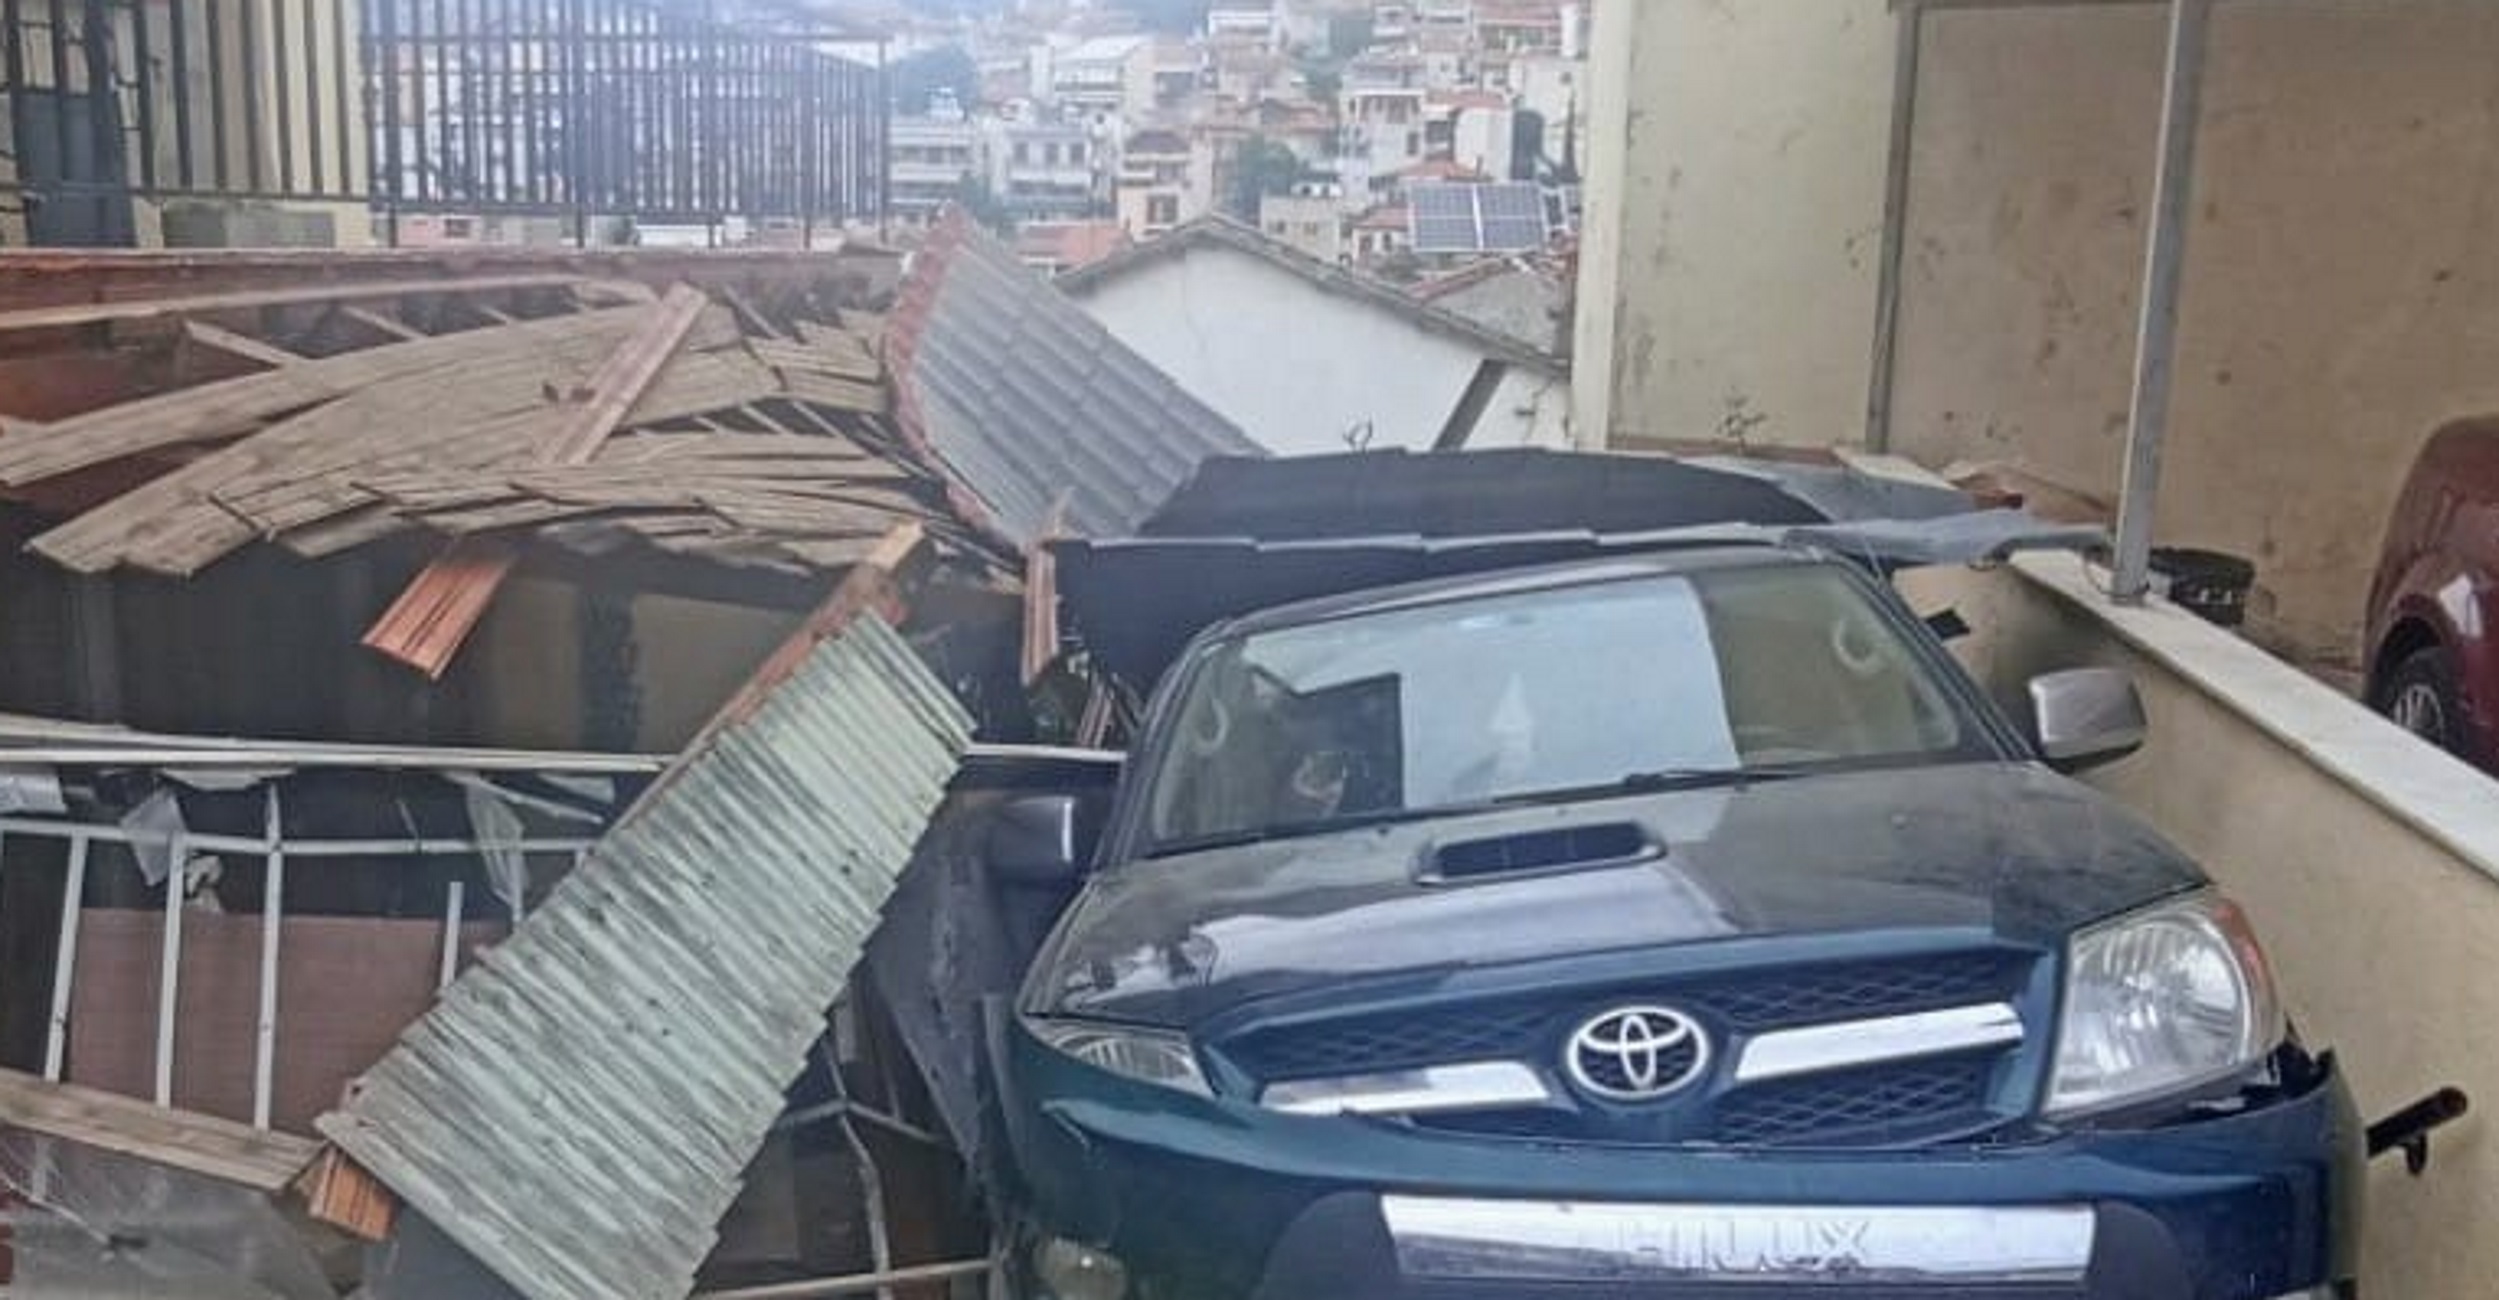 Θεσσαλονίκη: Αυτοκίνητο κατέληξε σε αυλή σπιτιού στο Ασβεστοχώρι – Δείτε την εικόνα